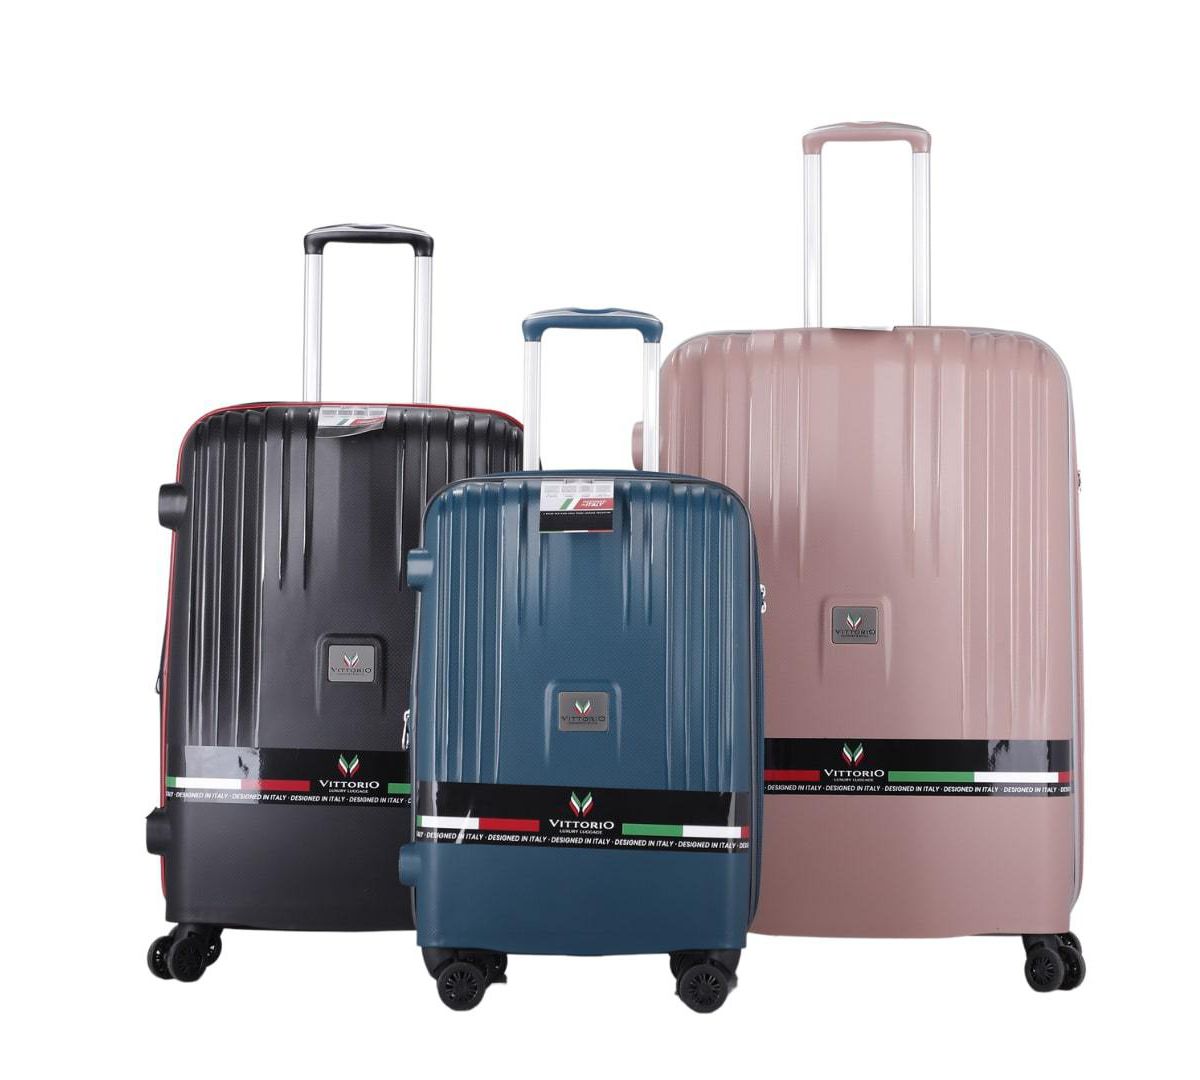 BH Luggage Vittorio-Milan 3-Piece Luggage Set BH Luggage